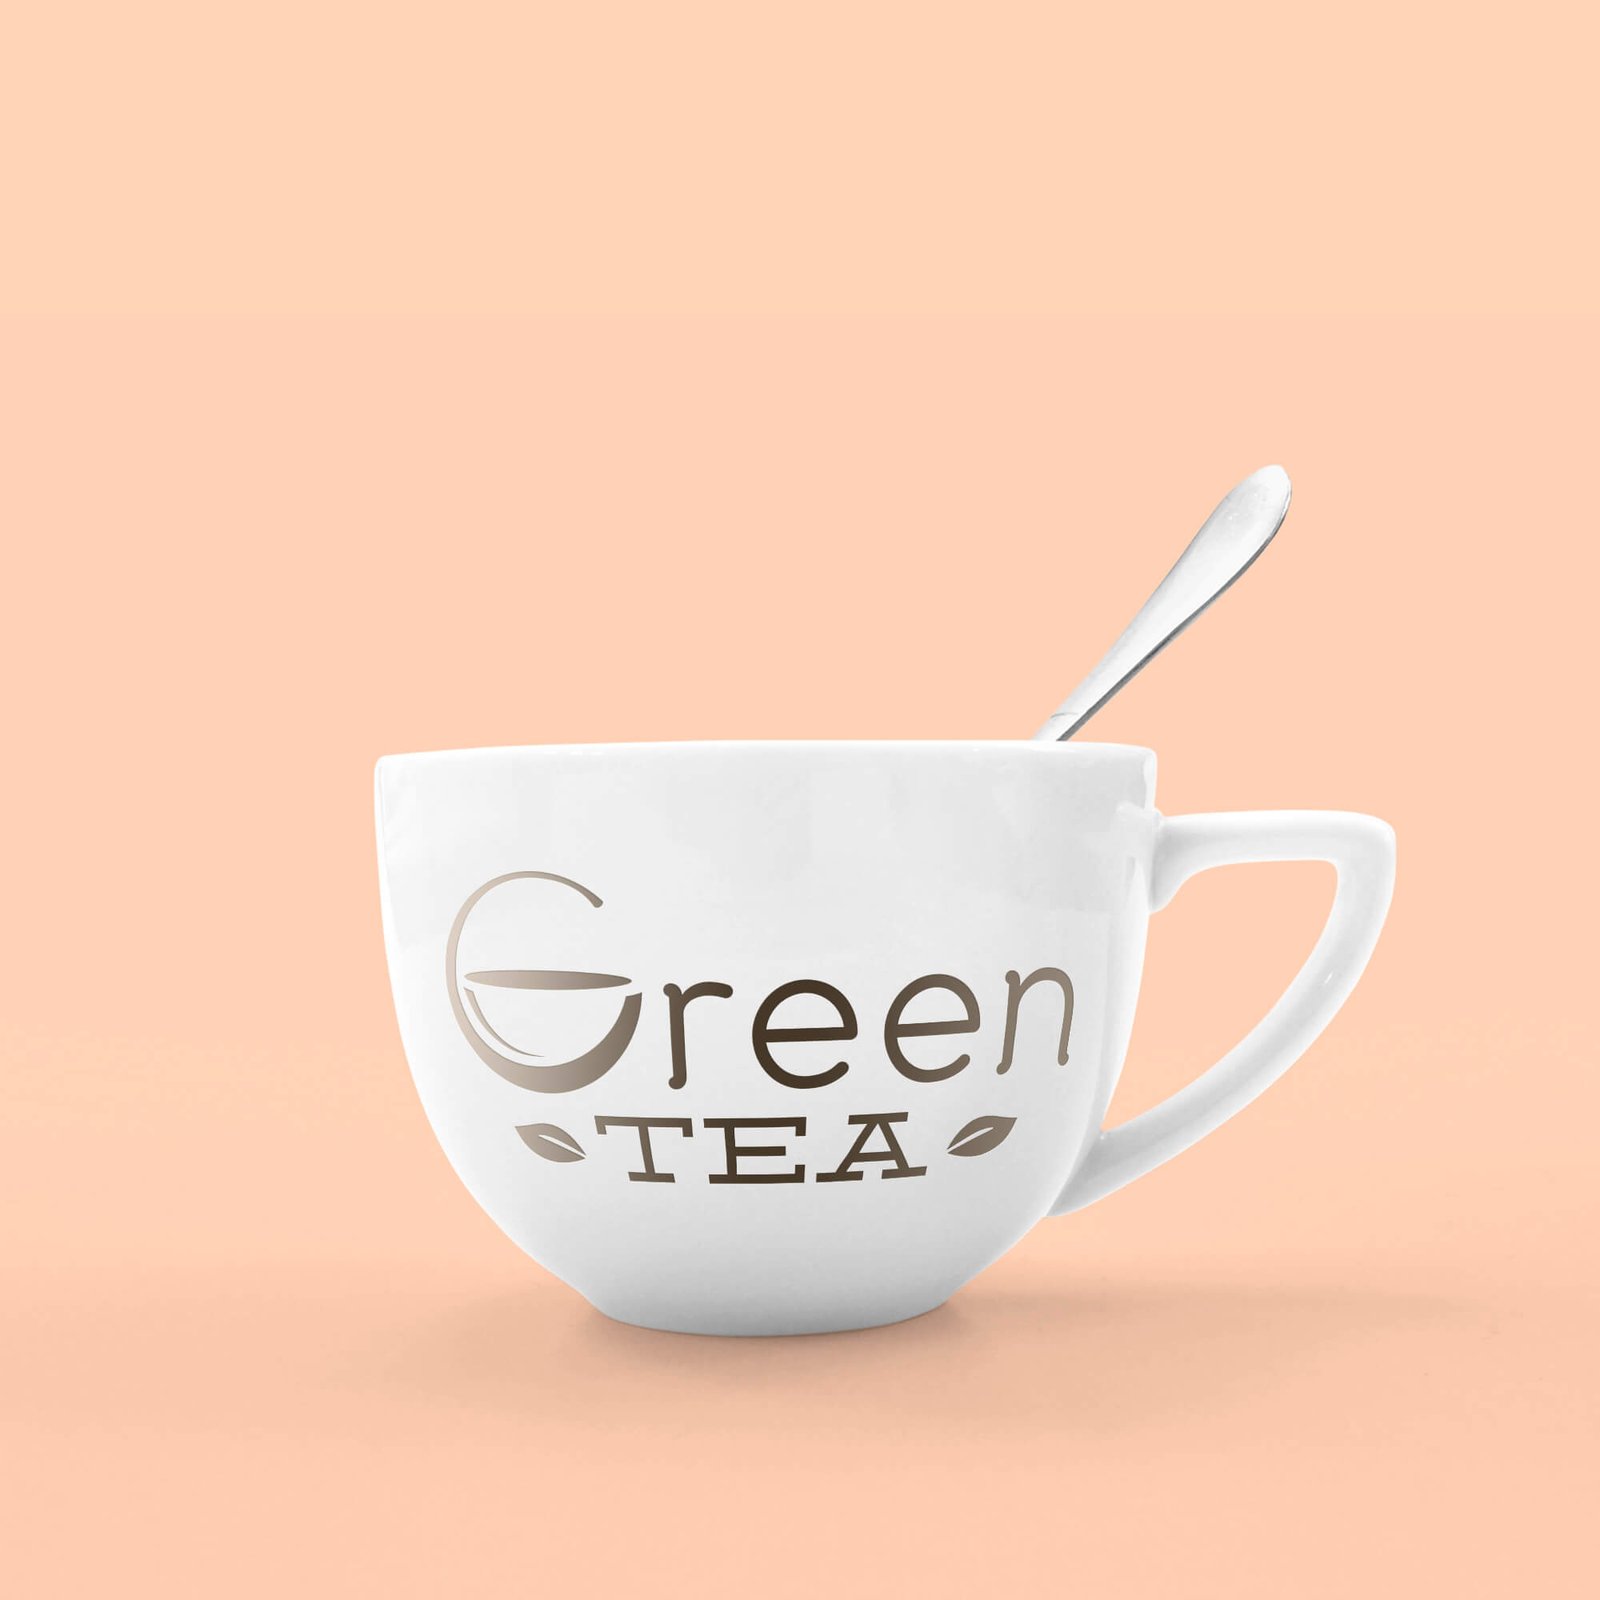 Design Free Tea Cup Mockup PSD Template